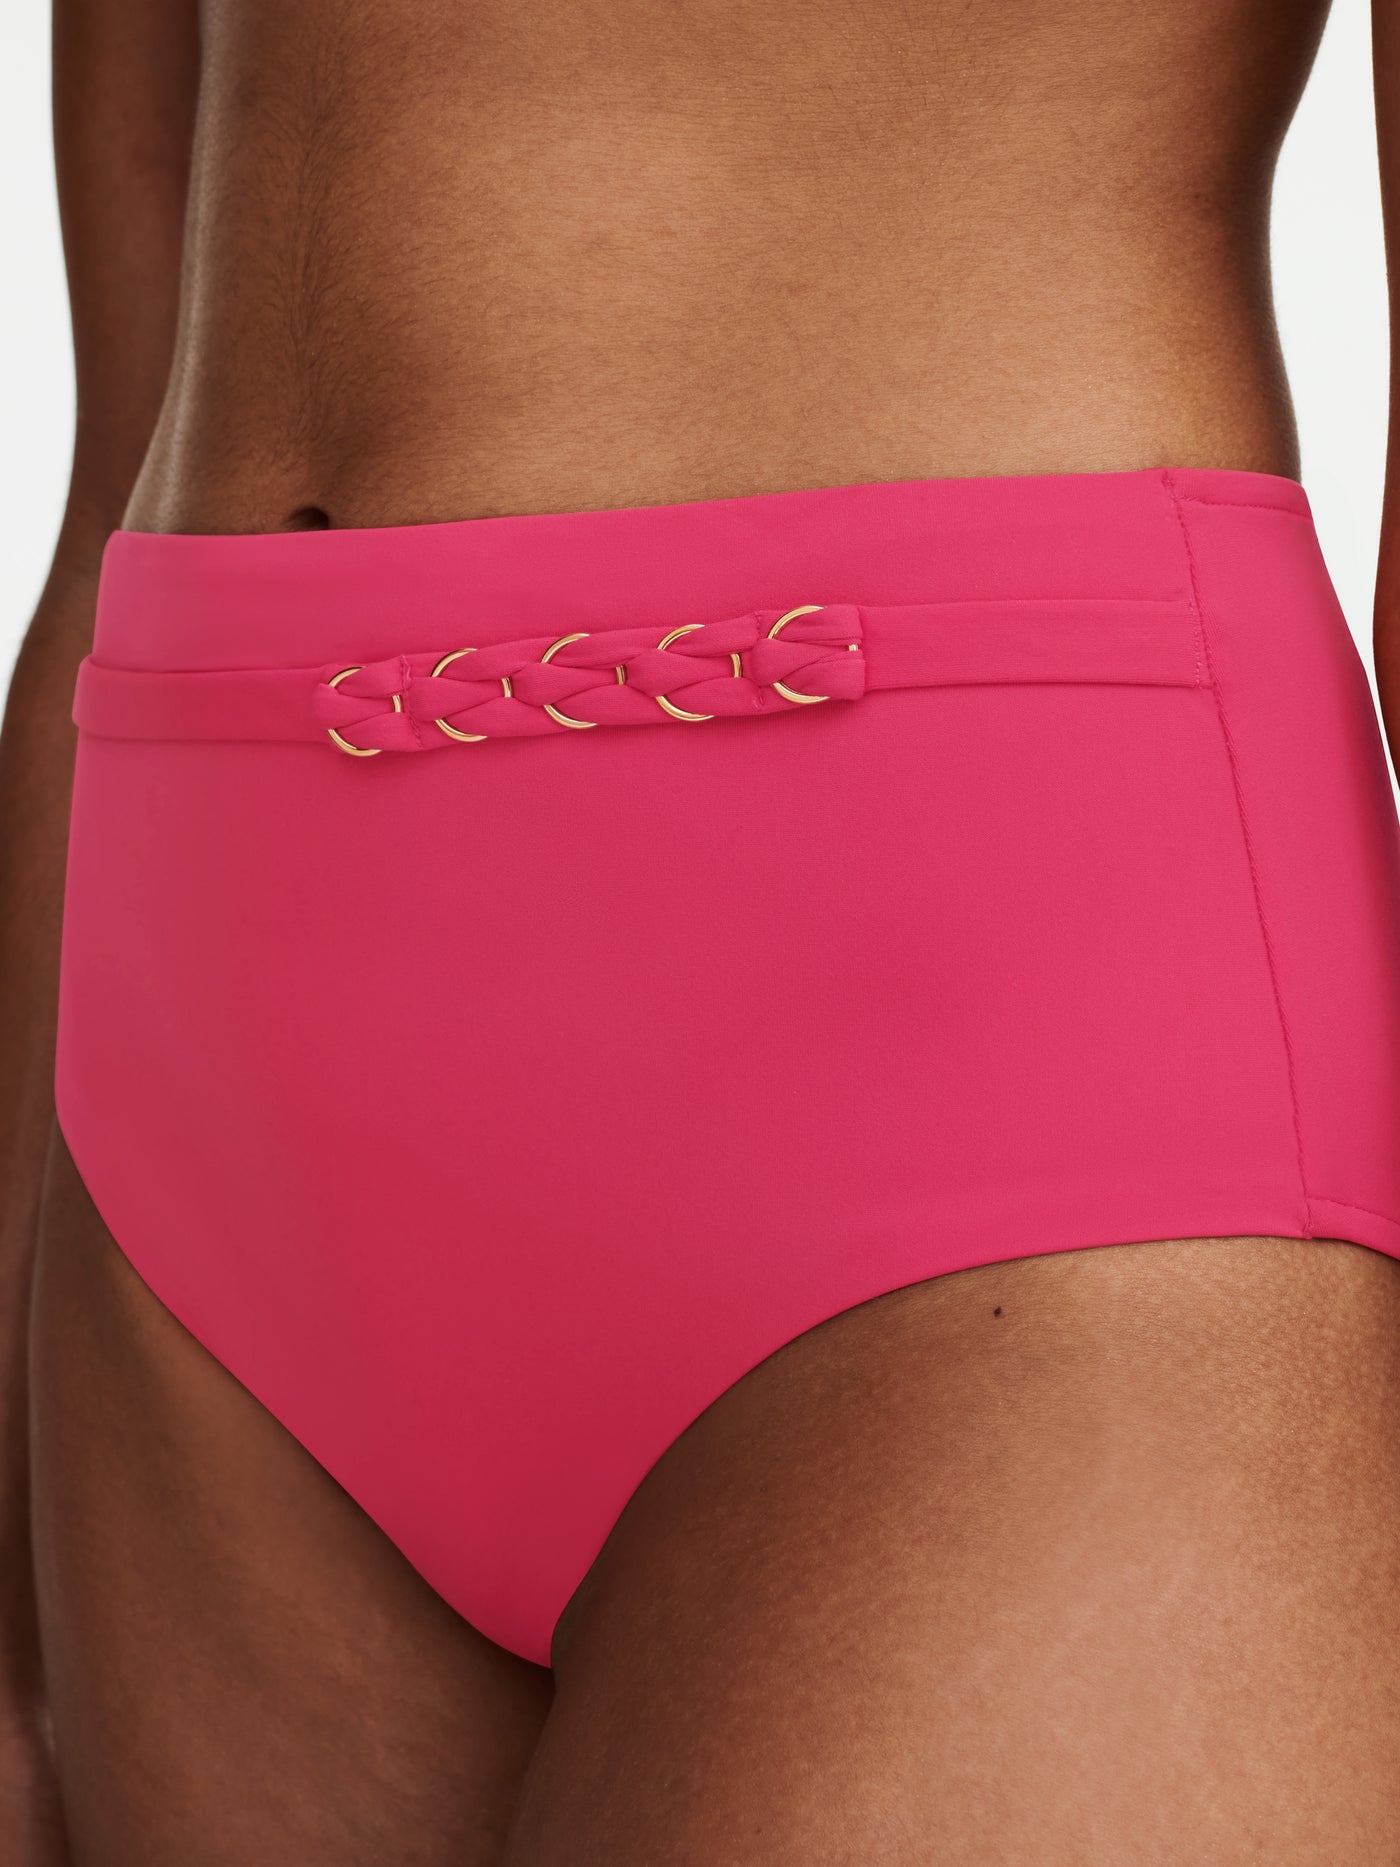 Chantelle Beachwear Emblem high waist bottom Cybele Pink